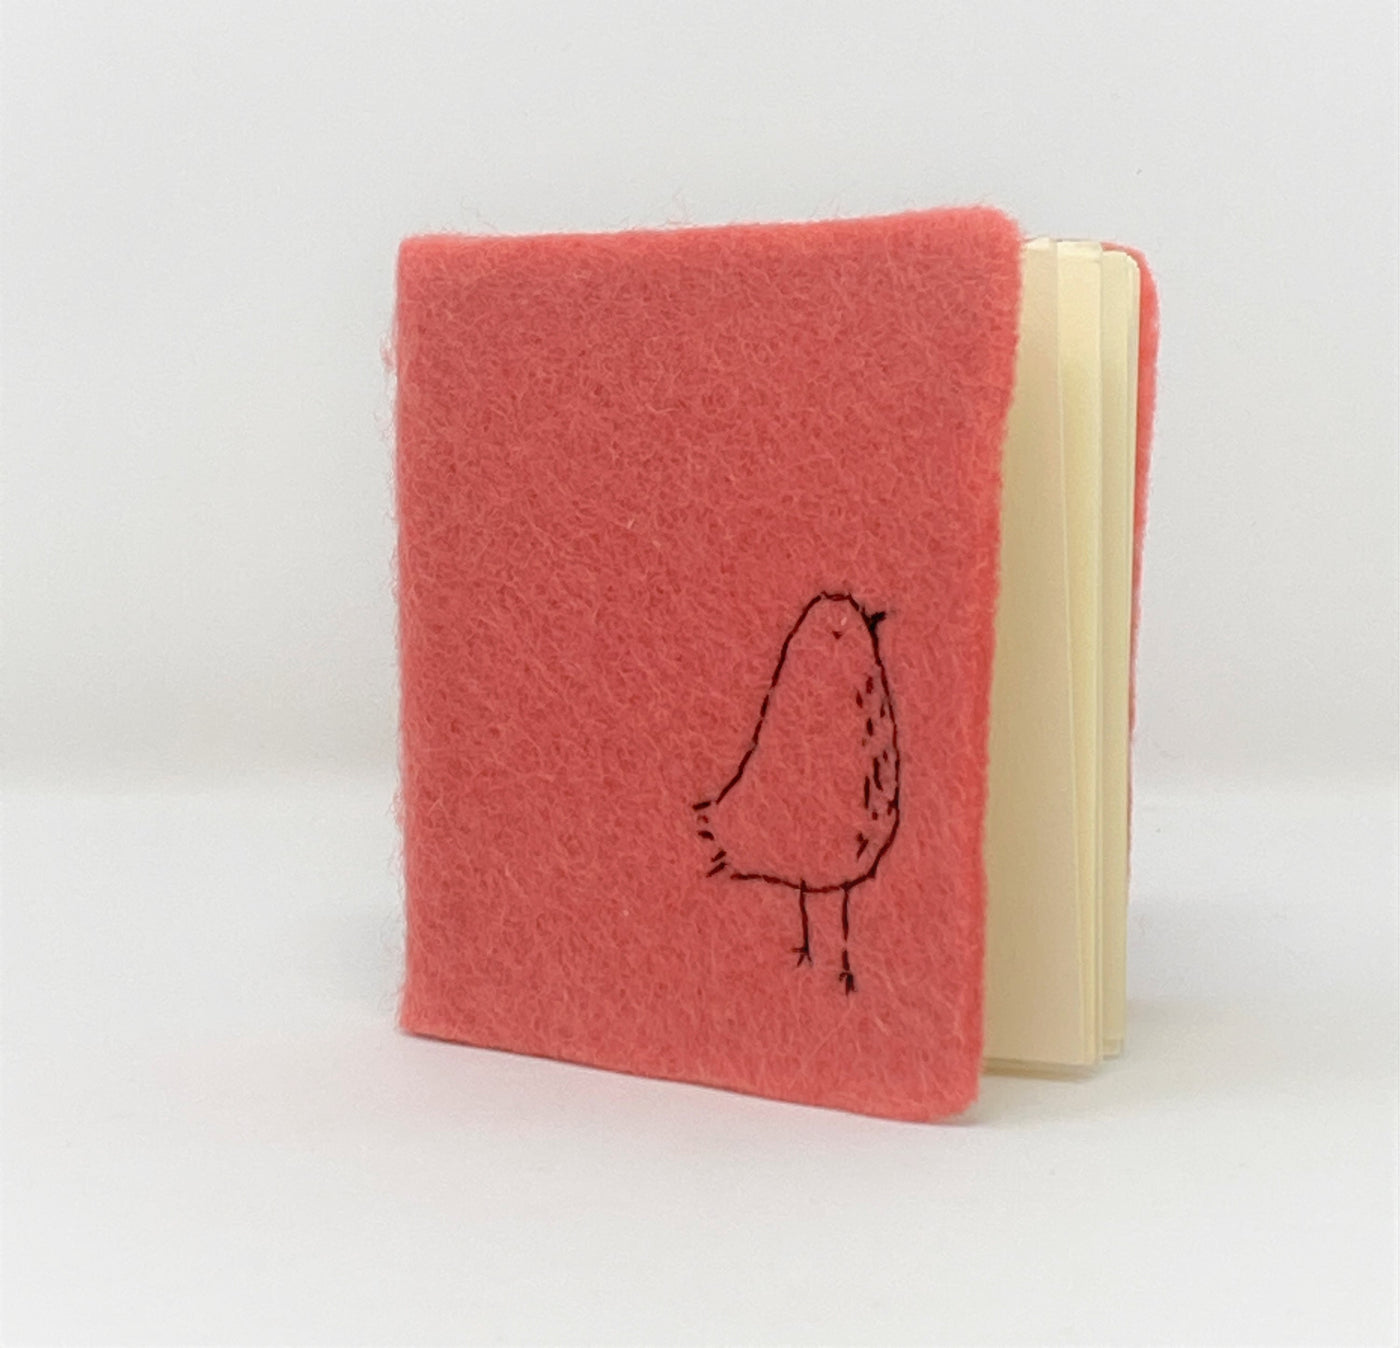 Little Felt Journal by Kata Golda Handmade